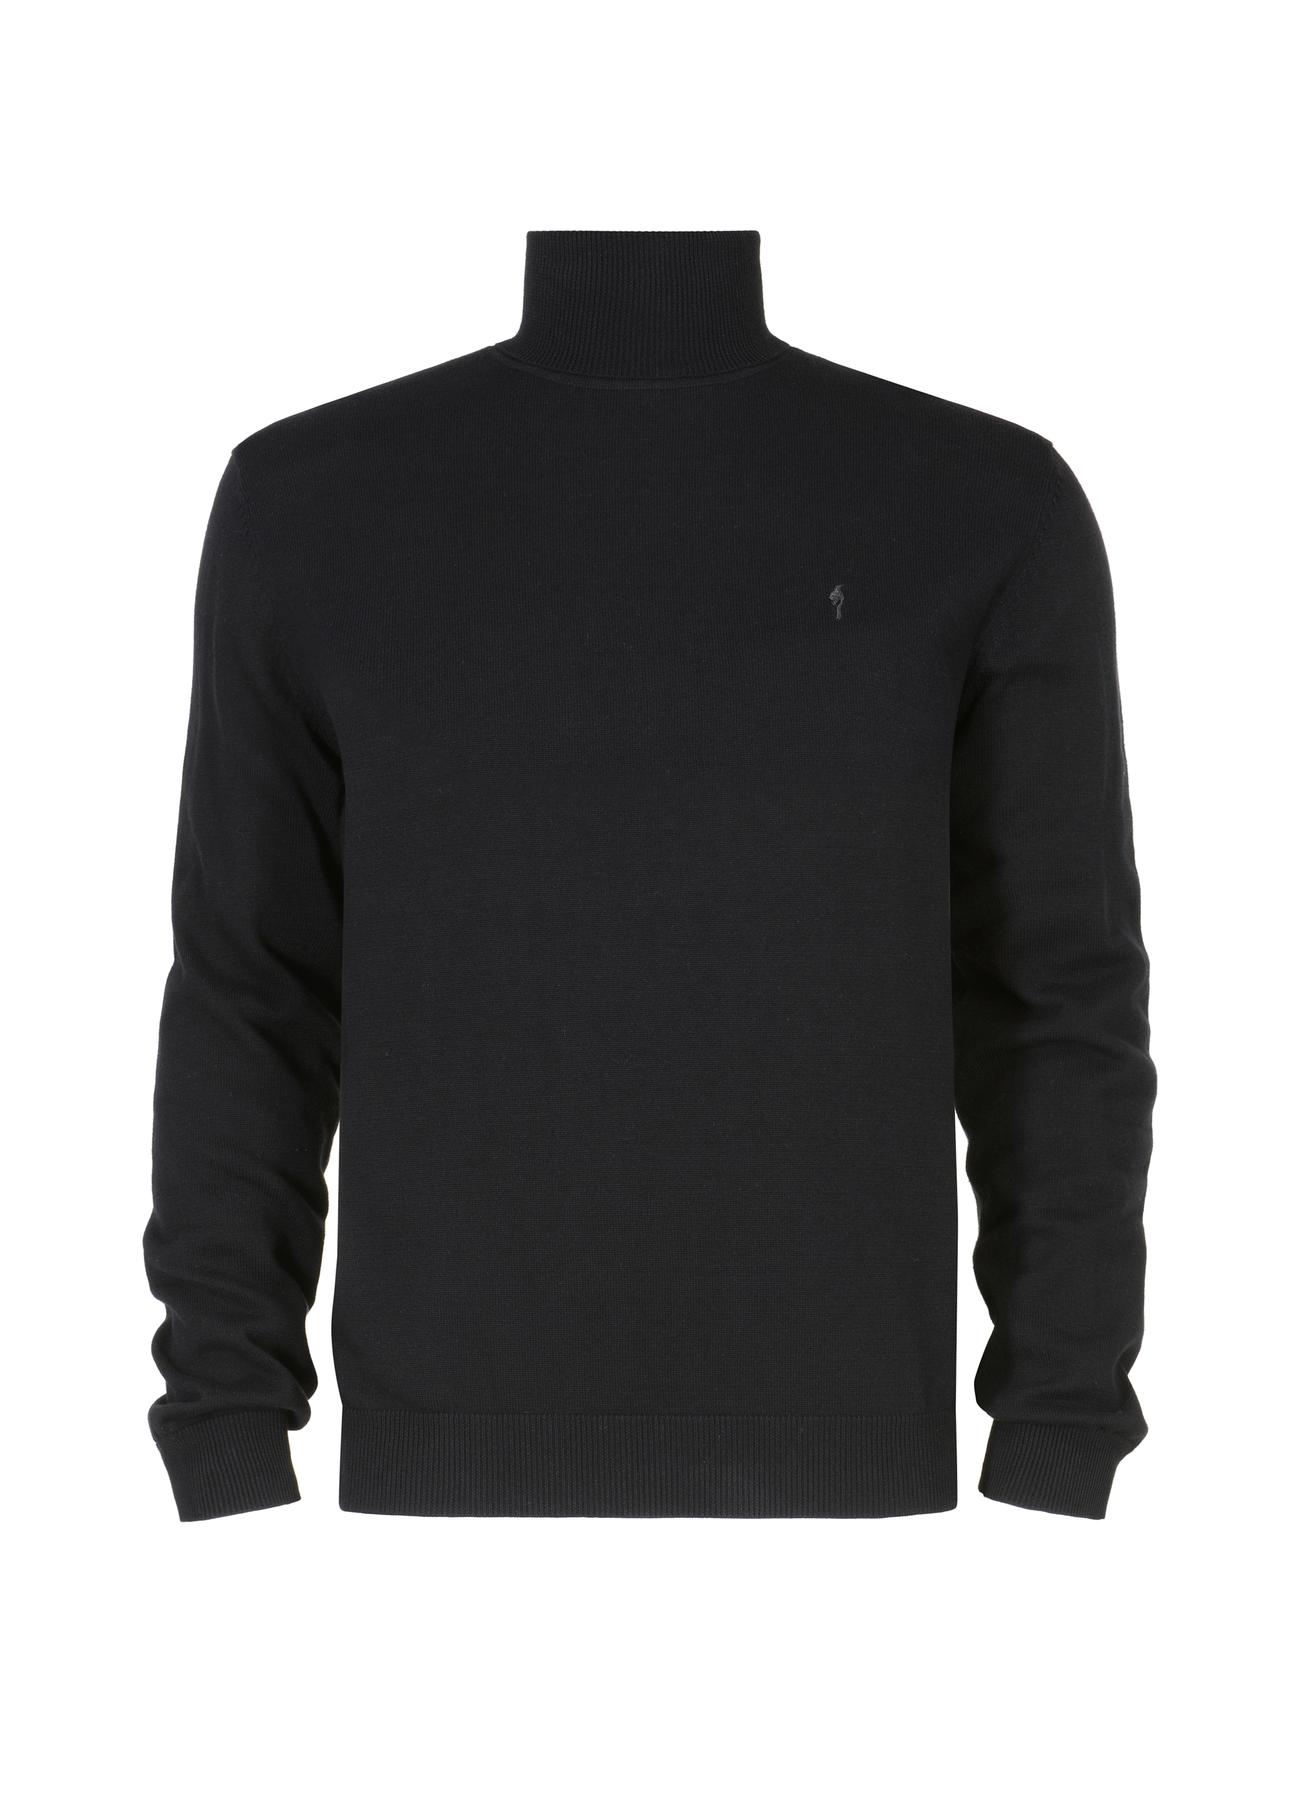 Czarny sweter męski z golfem SWEMT-0095A-99(Z23)